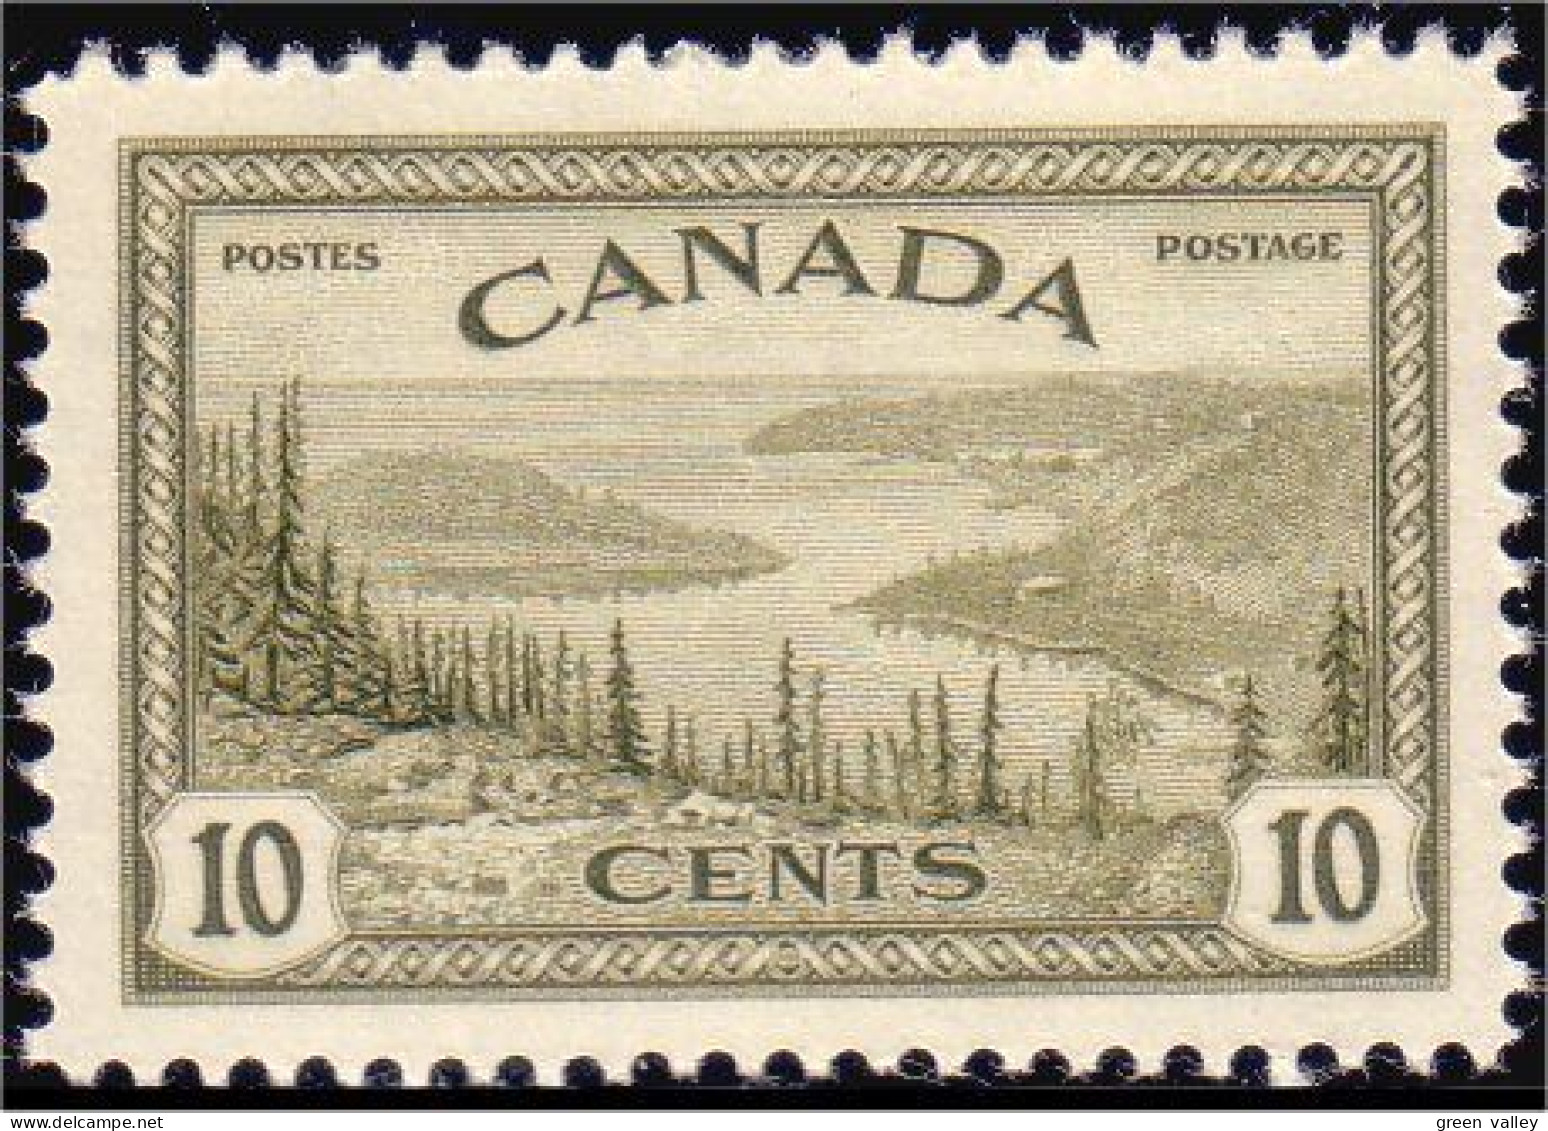 951 Canada 1946 Great Bear Lake MNH ** Neuf SC (31) - Ongebruikt